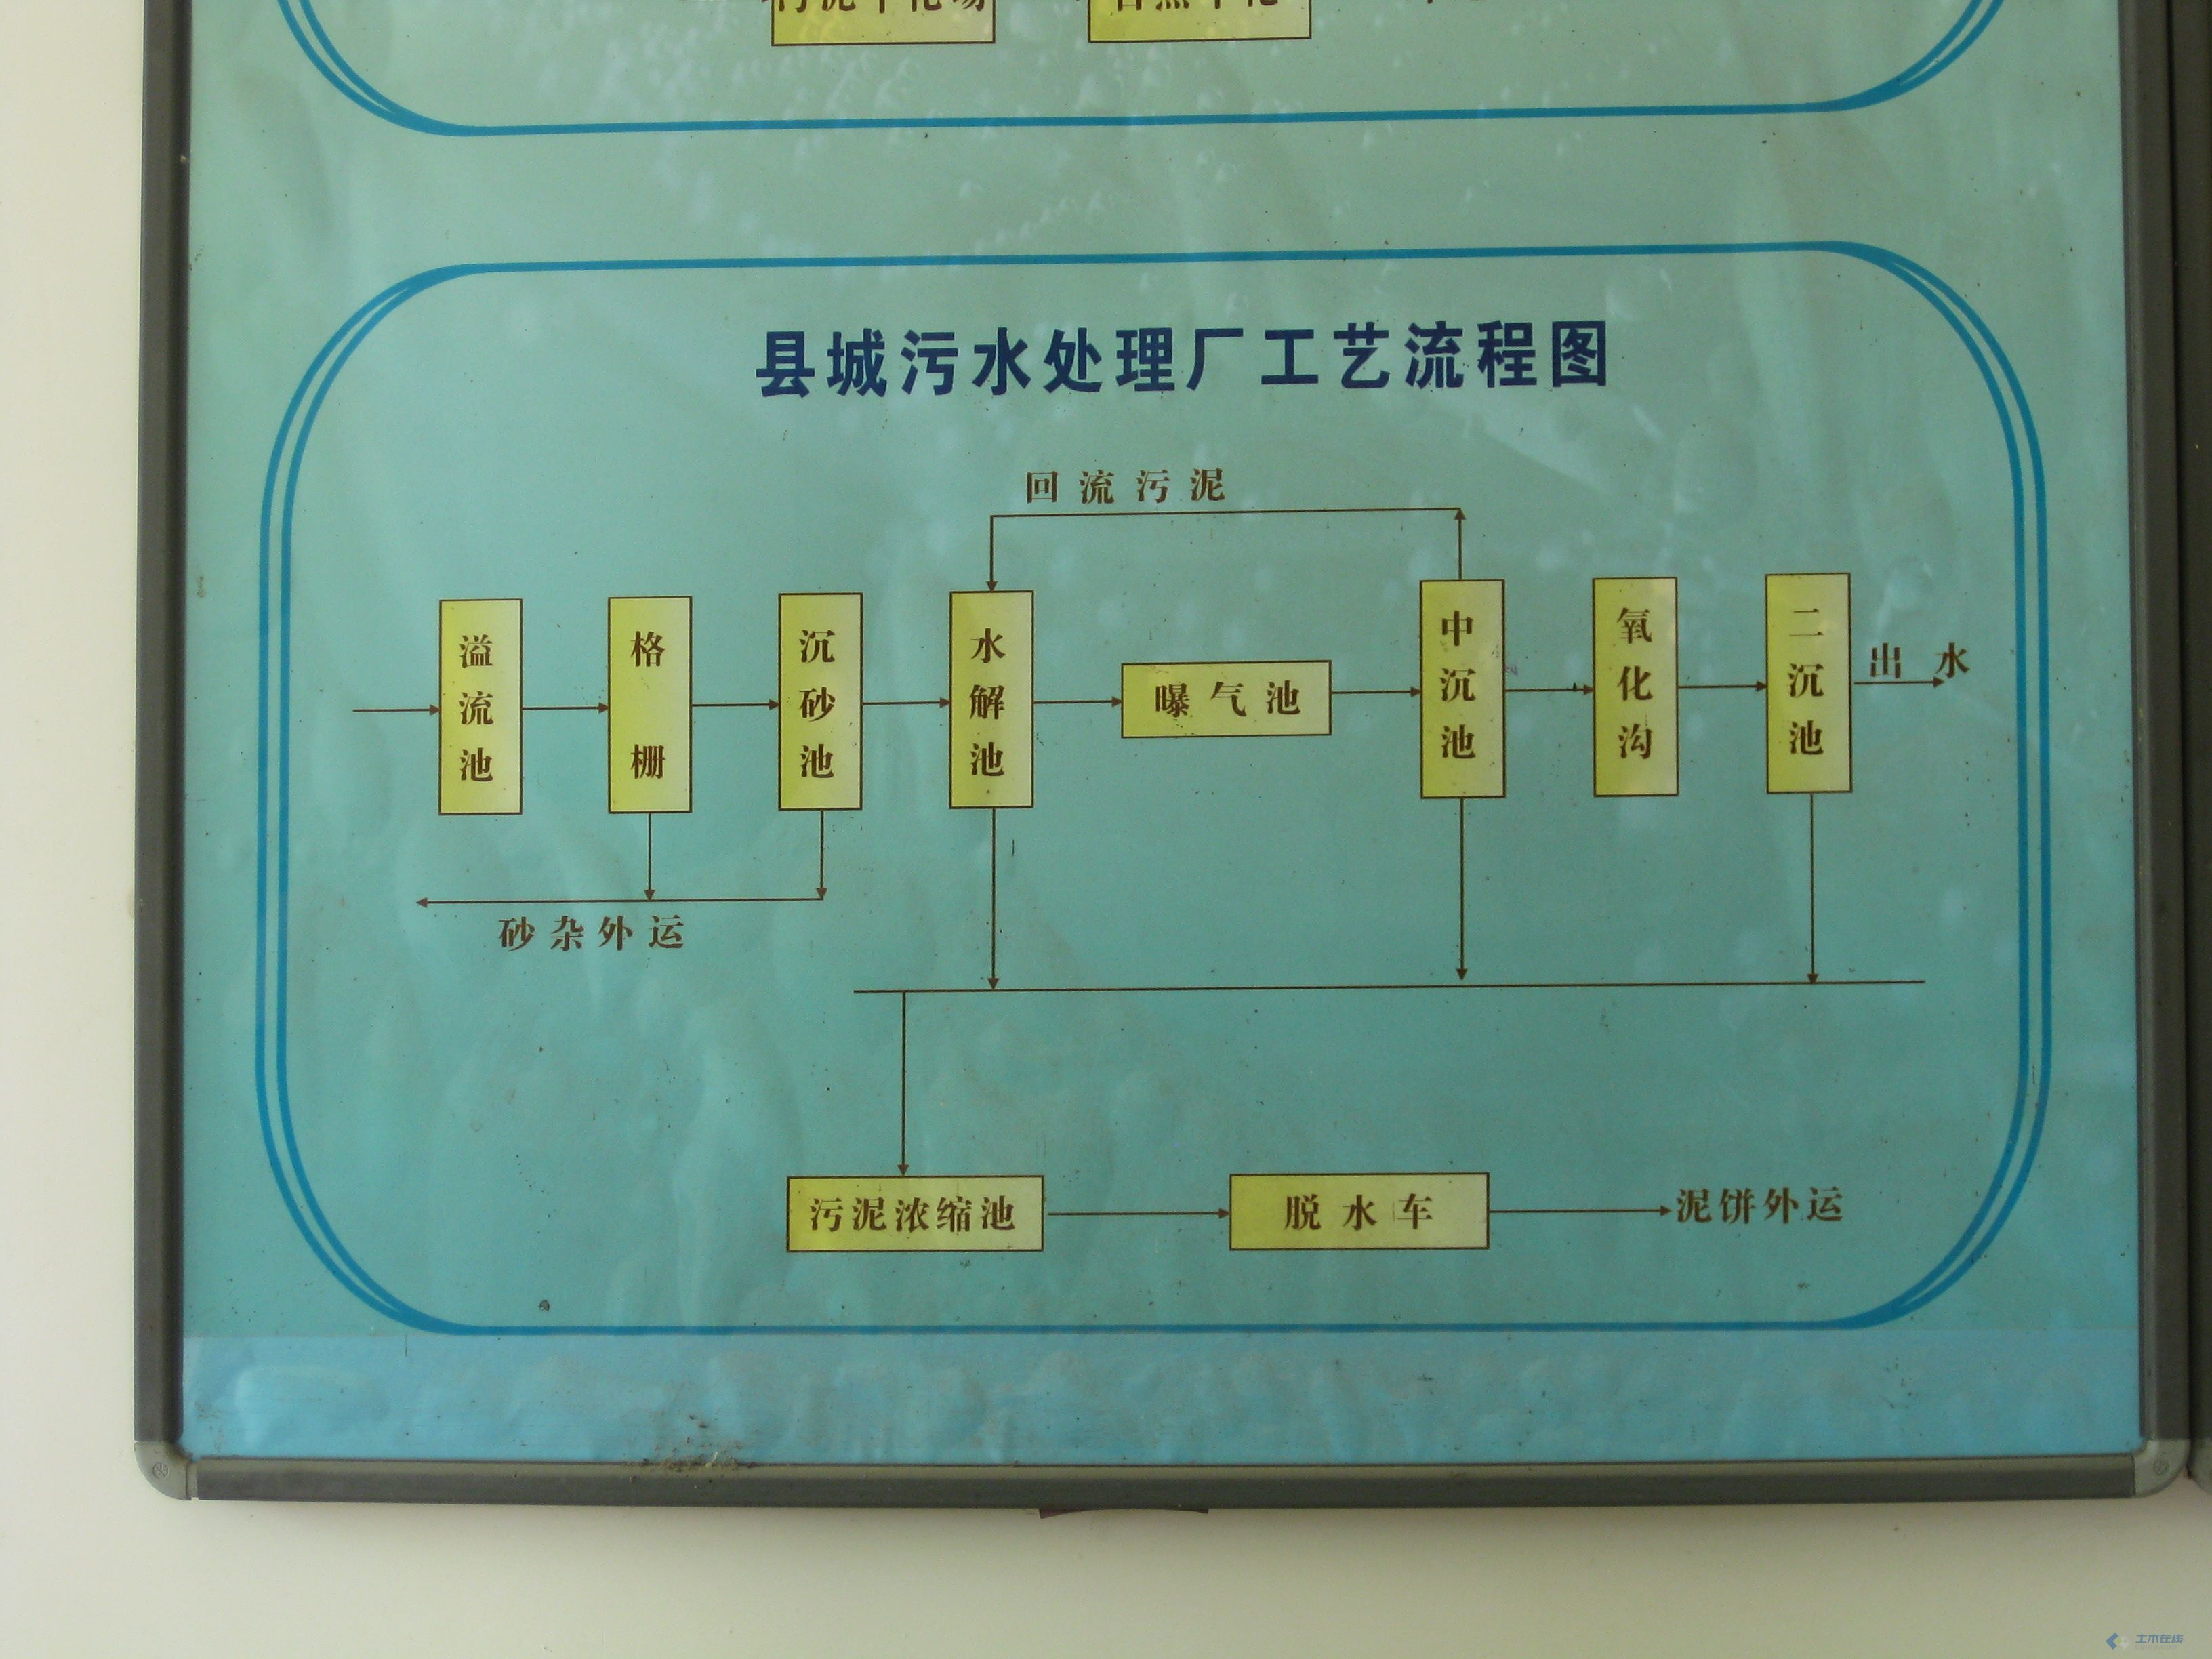 县城污水厂流程图.jpg